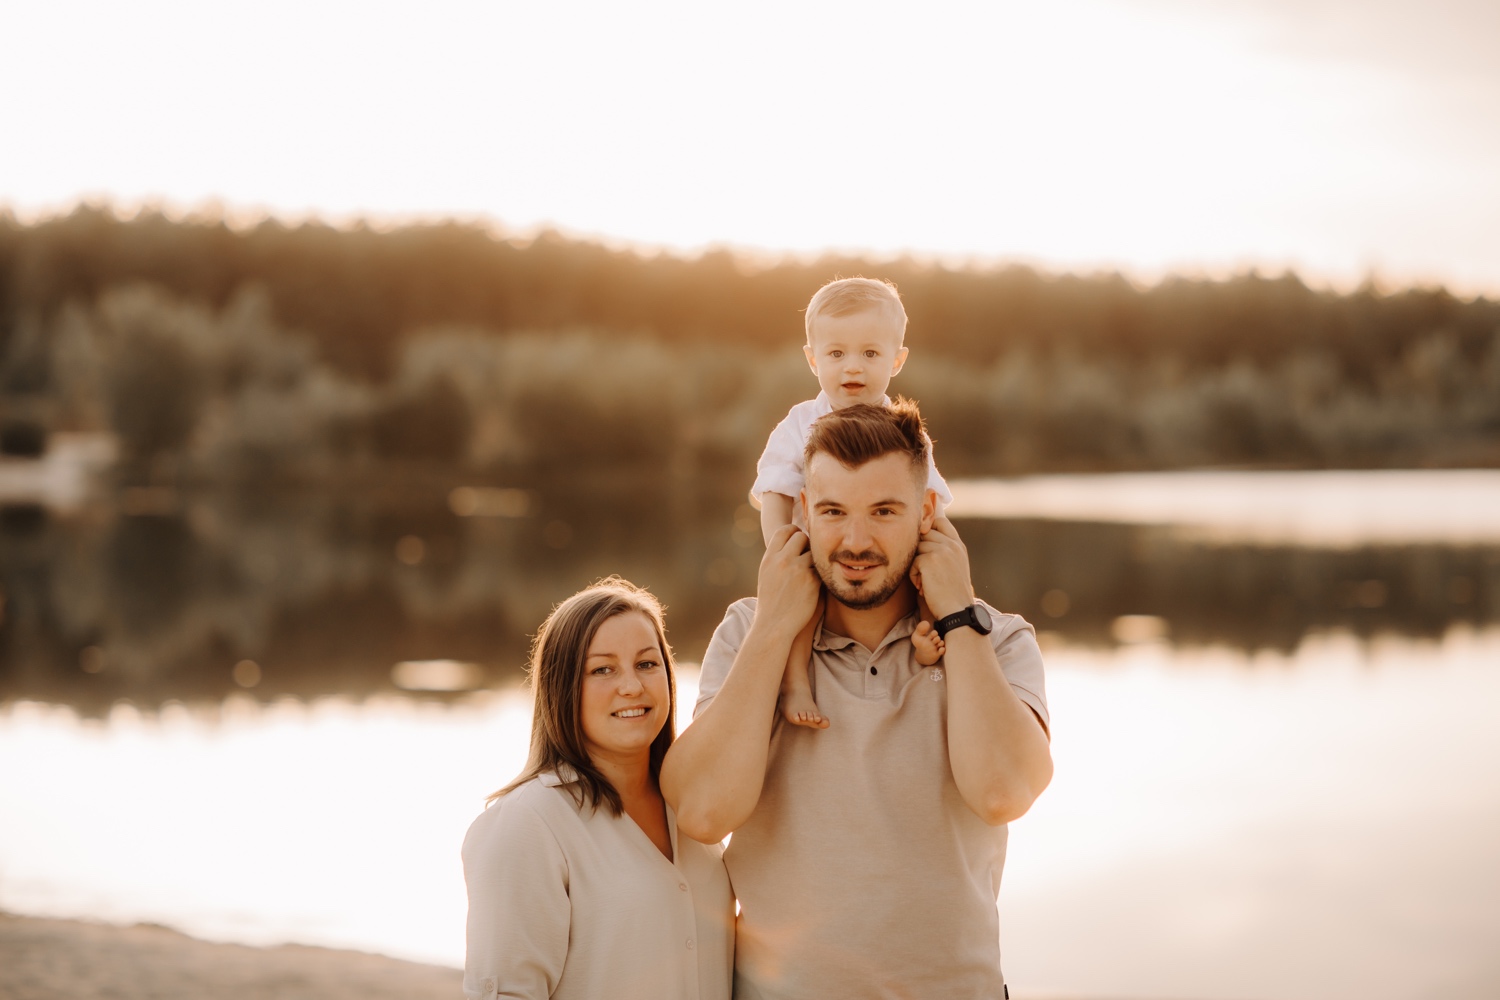 gezinsfotograaf - gezin poseert voor de camera